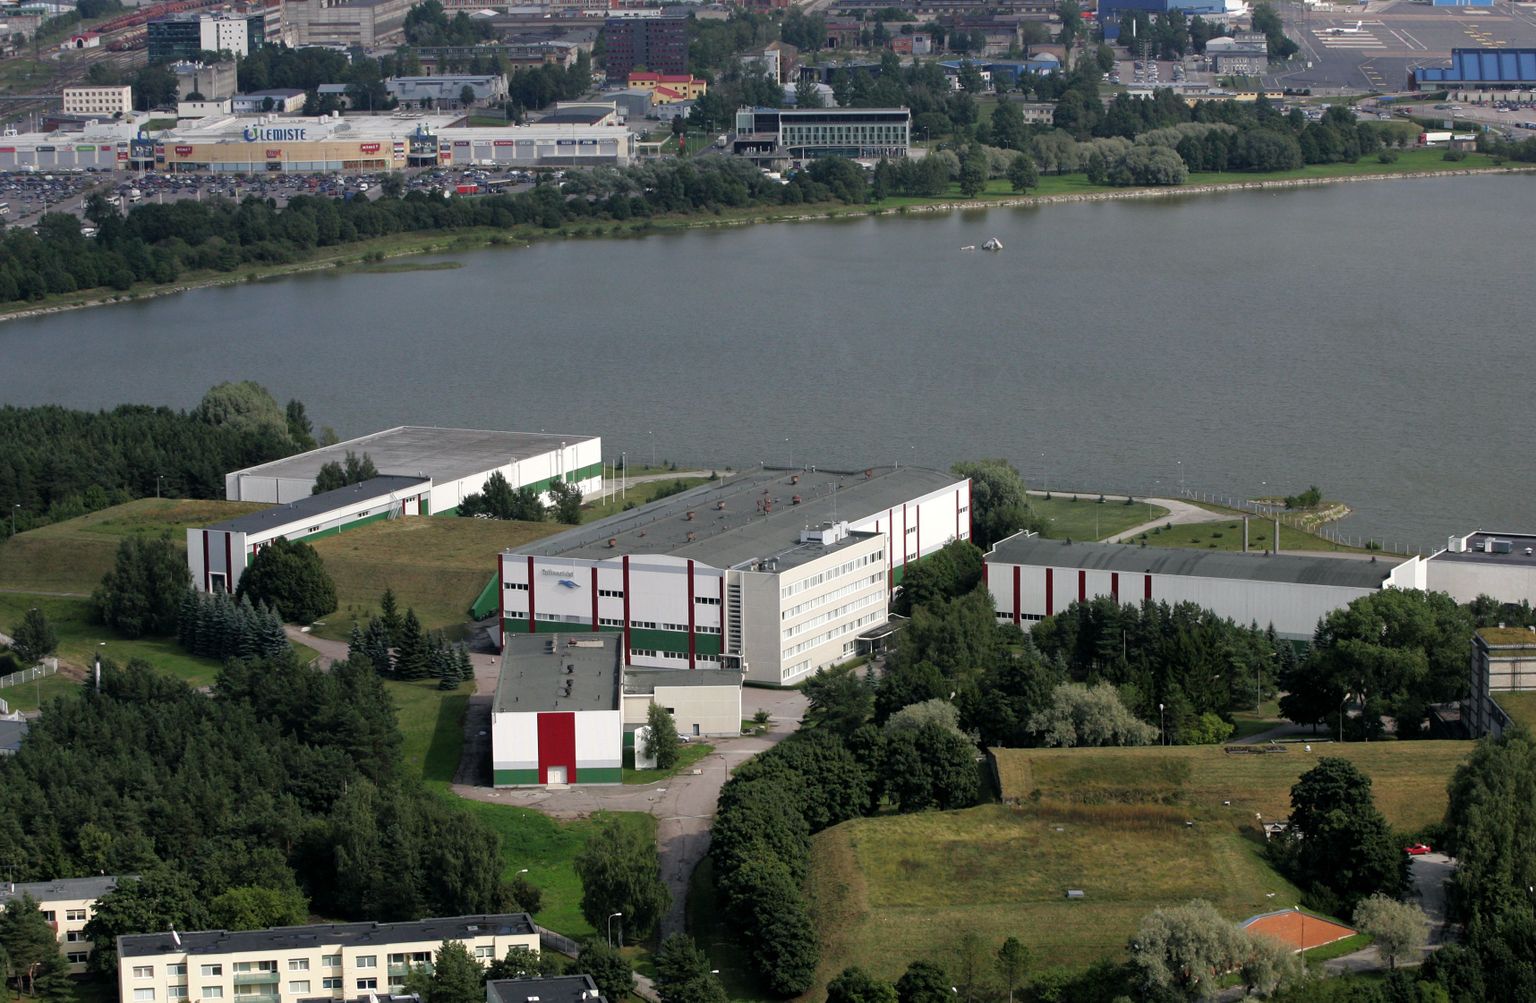 Tallinna Vee veepuhastusjaam Ülemiste järve ääres. Justiitsministeeriumil seisab vee-ettevõttega ees veel pikk ja kulukas kohtutee.